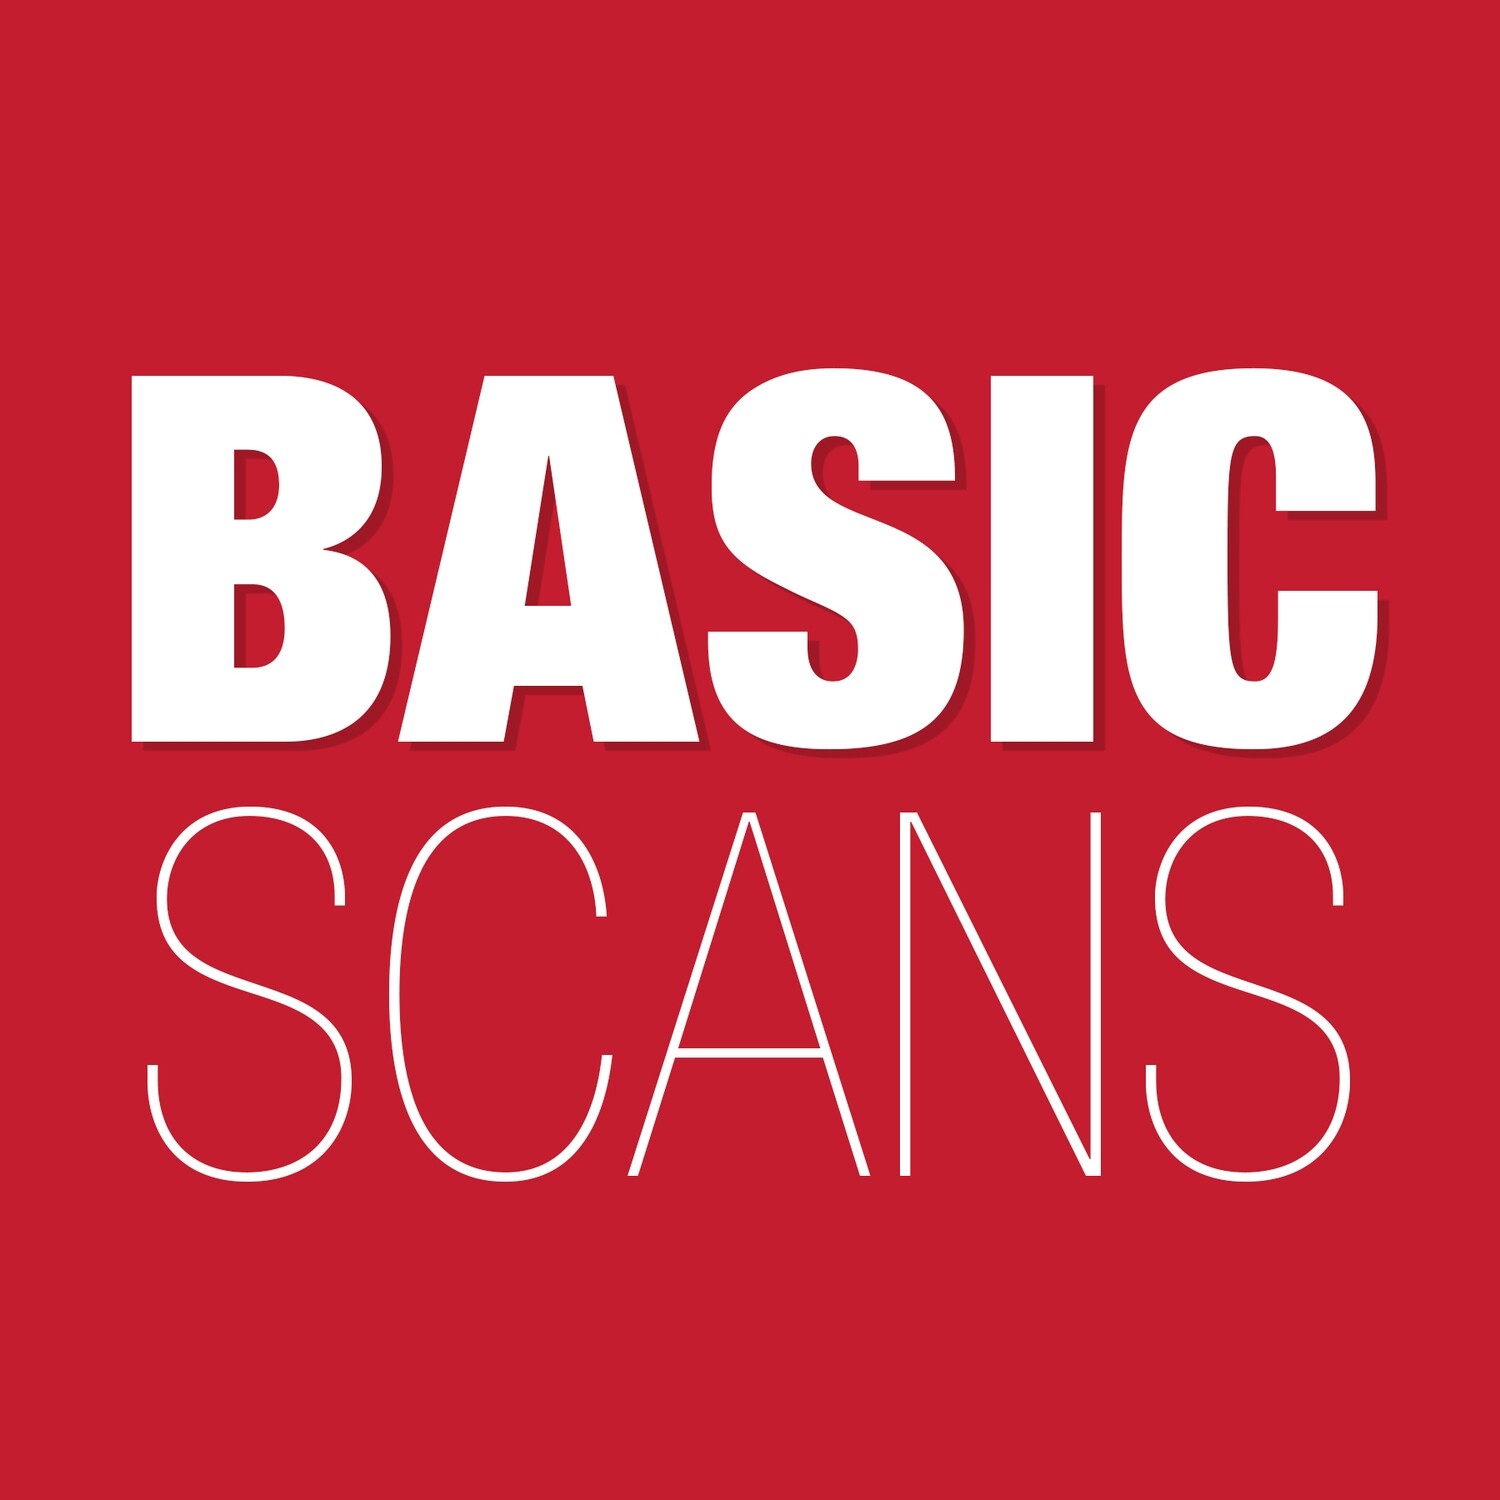 Basic Scans